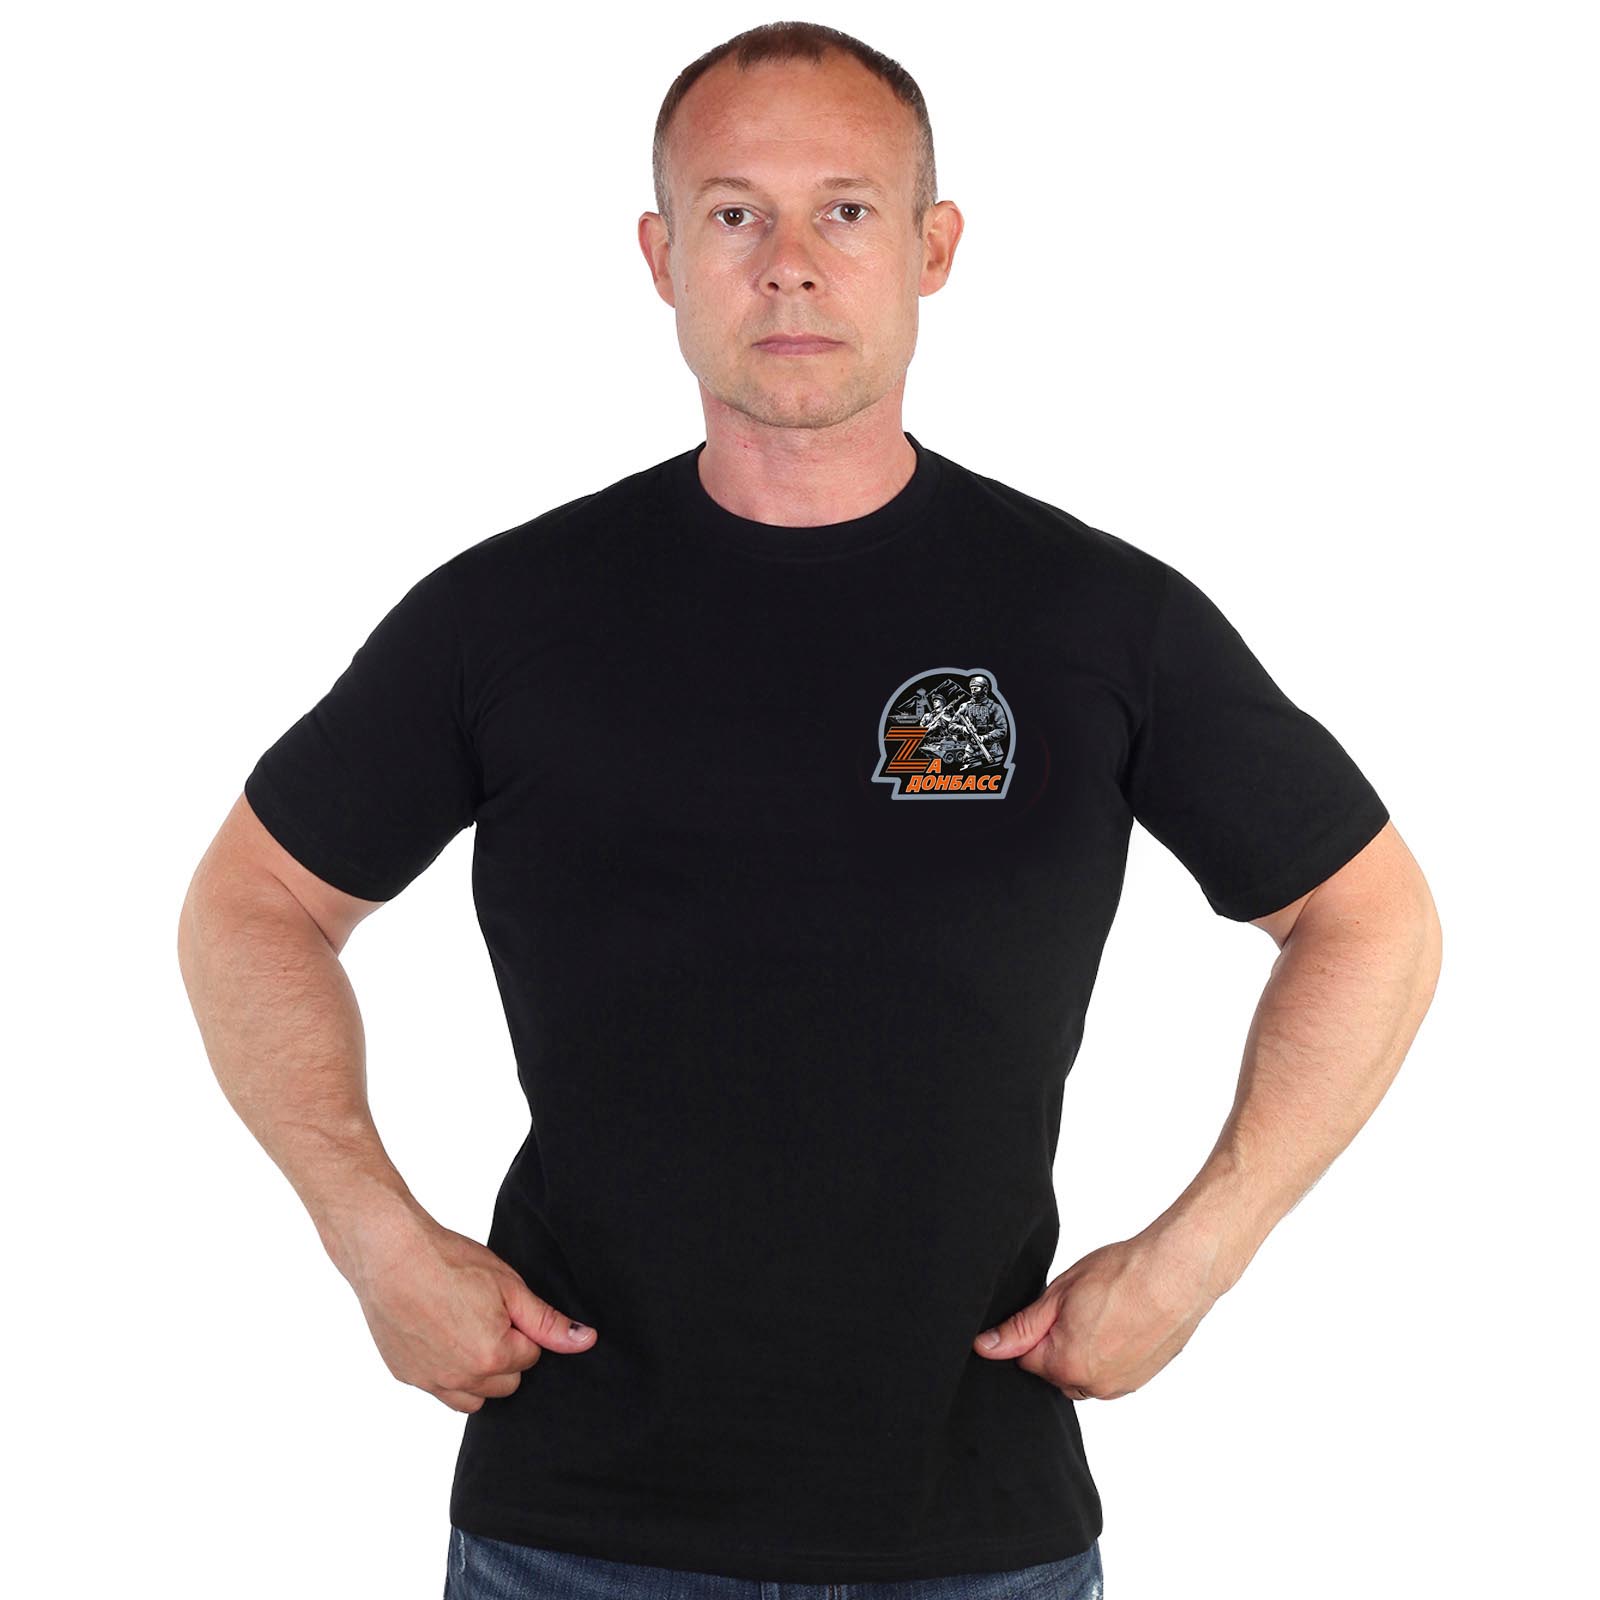 Купить в интернет магазине футболку За Донбасс